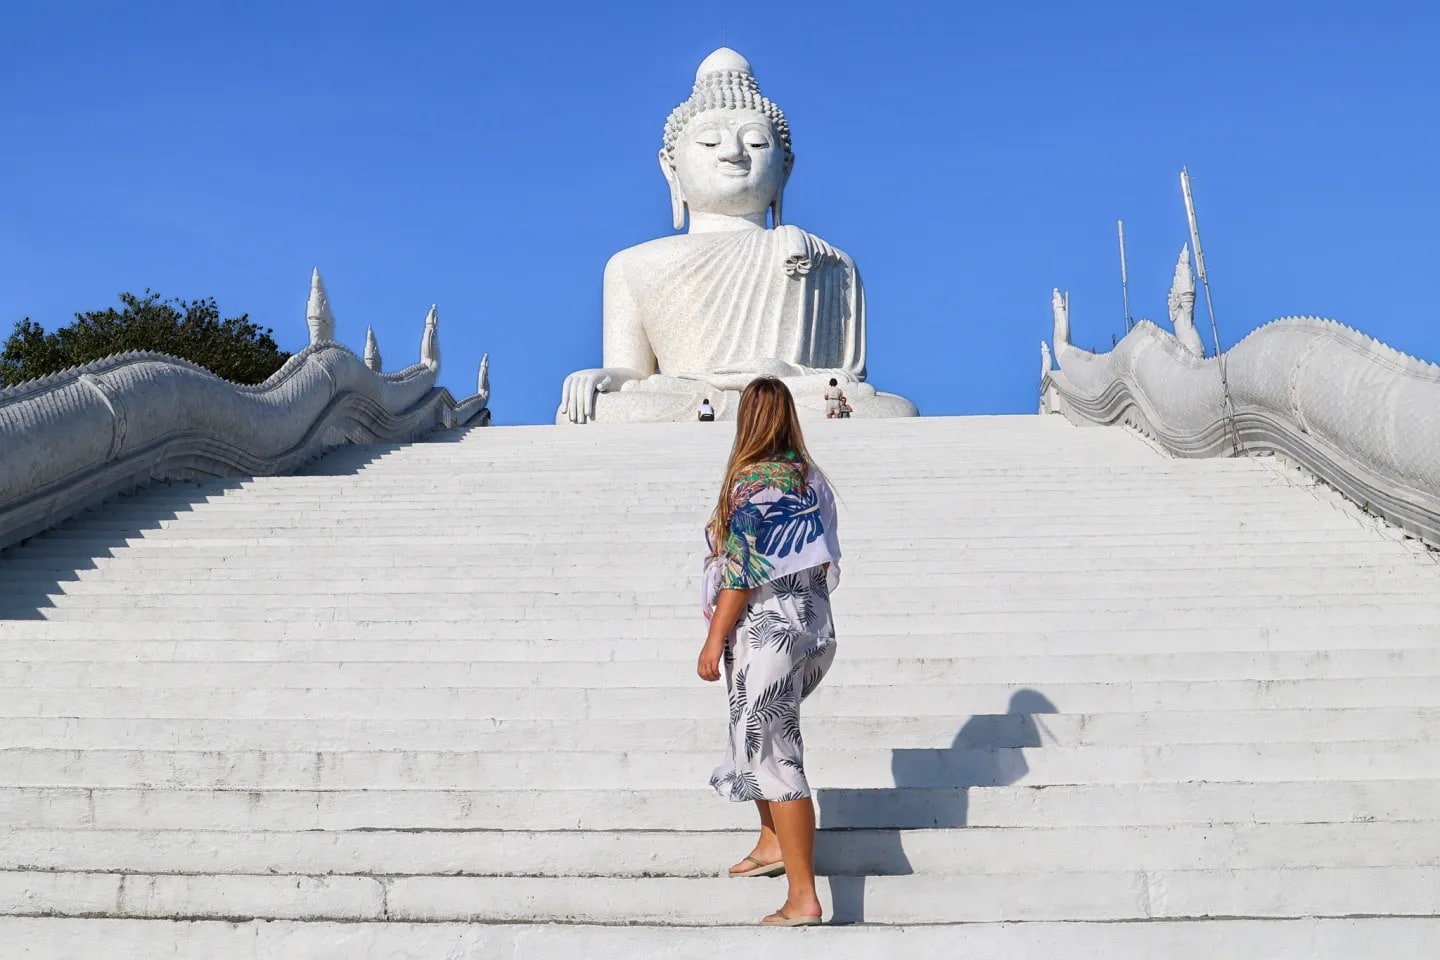 About The Big Buddha Phuket